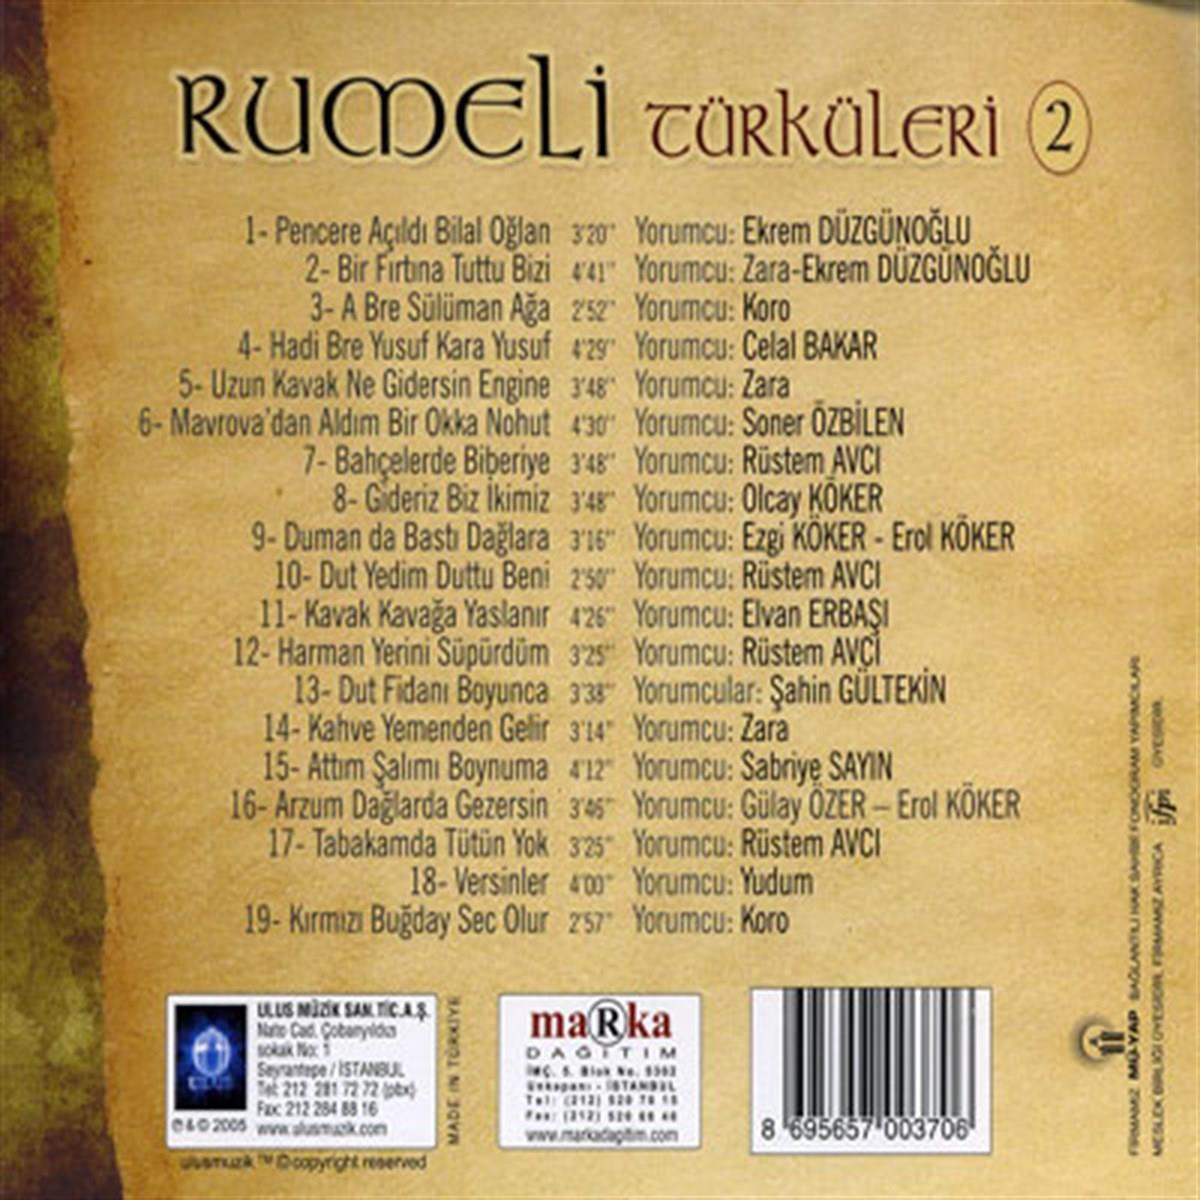 Trakya Türküleri- Rumeli Türküleri 2 (CD) | esenshop - Plak, LP, CD, DVD